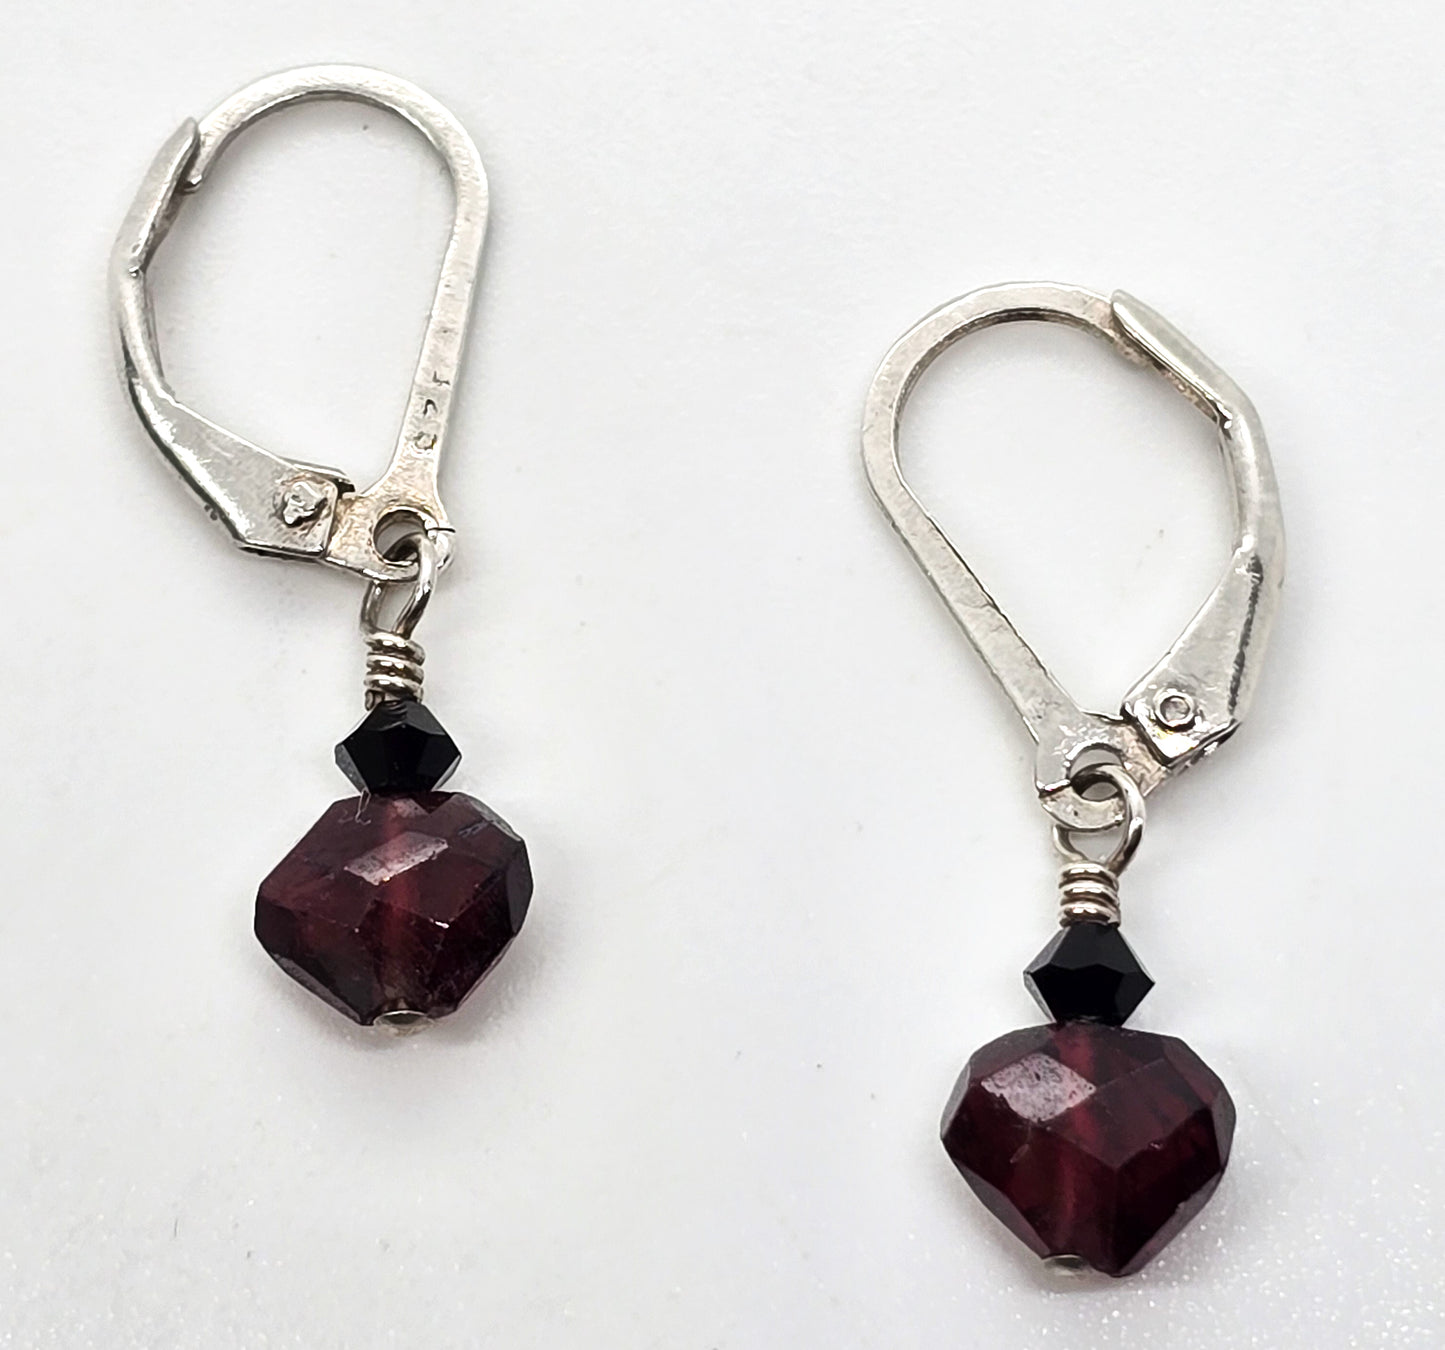 rhodolite garnet and Swarovski crystal beaded drop sterling silver earrings